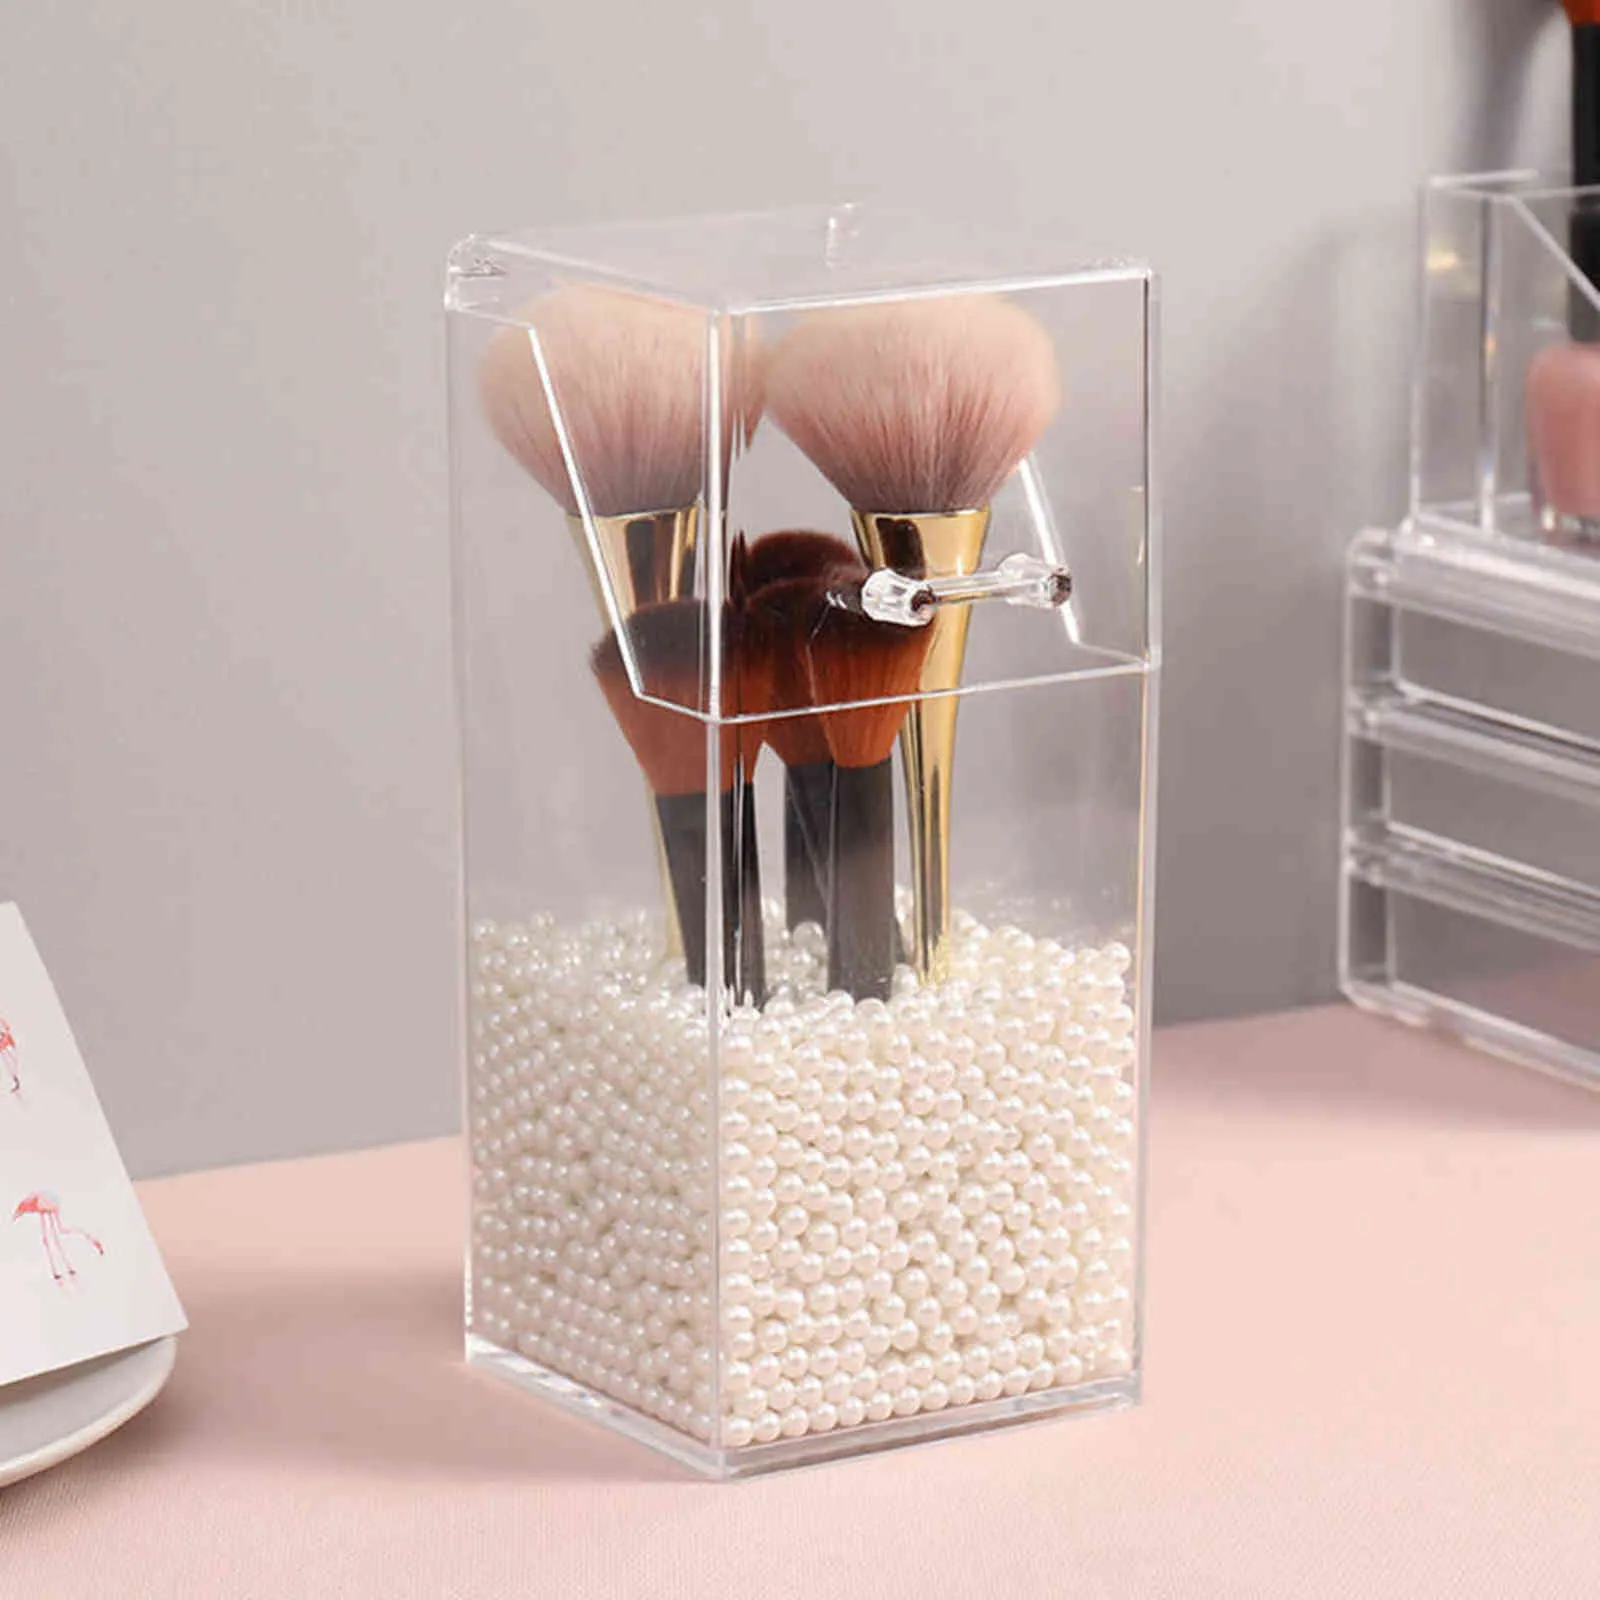 Perle clair acrylique cosmétique organisateur maquillage brosse conteneur stockage support de la boîte rouge à lèvres crayon